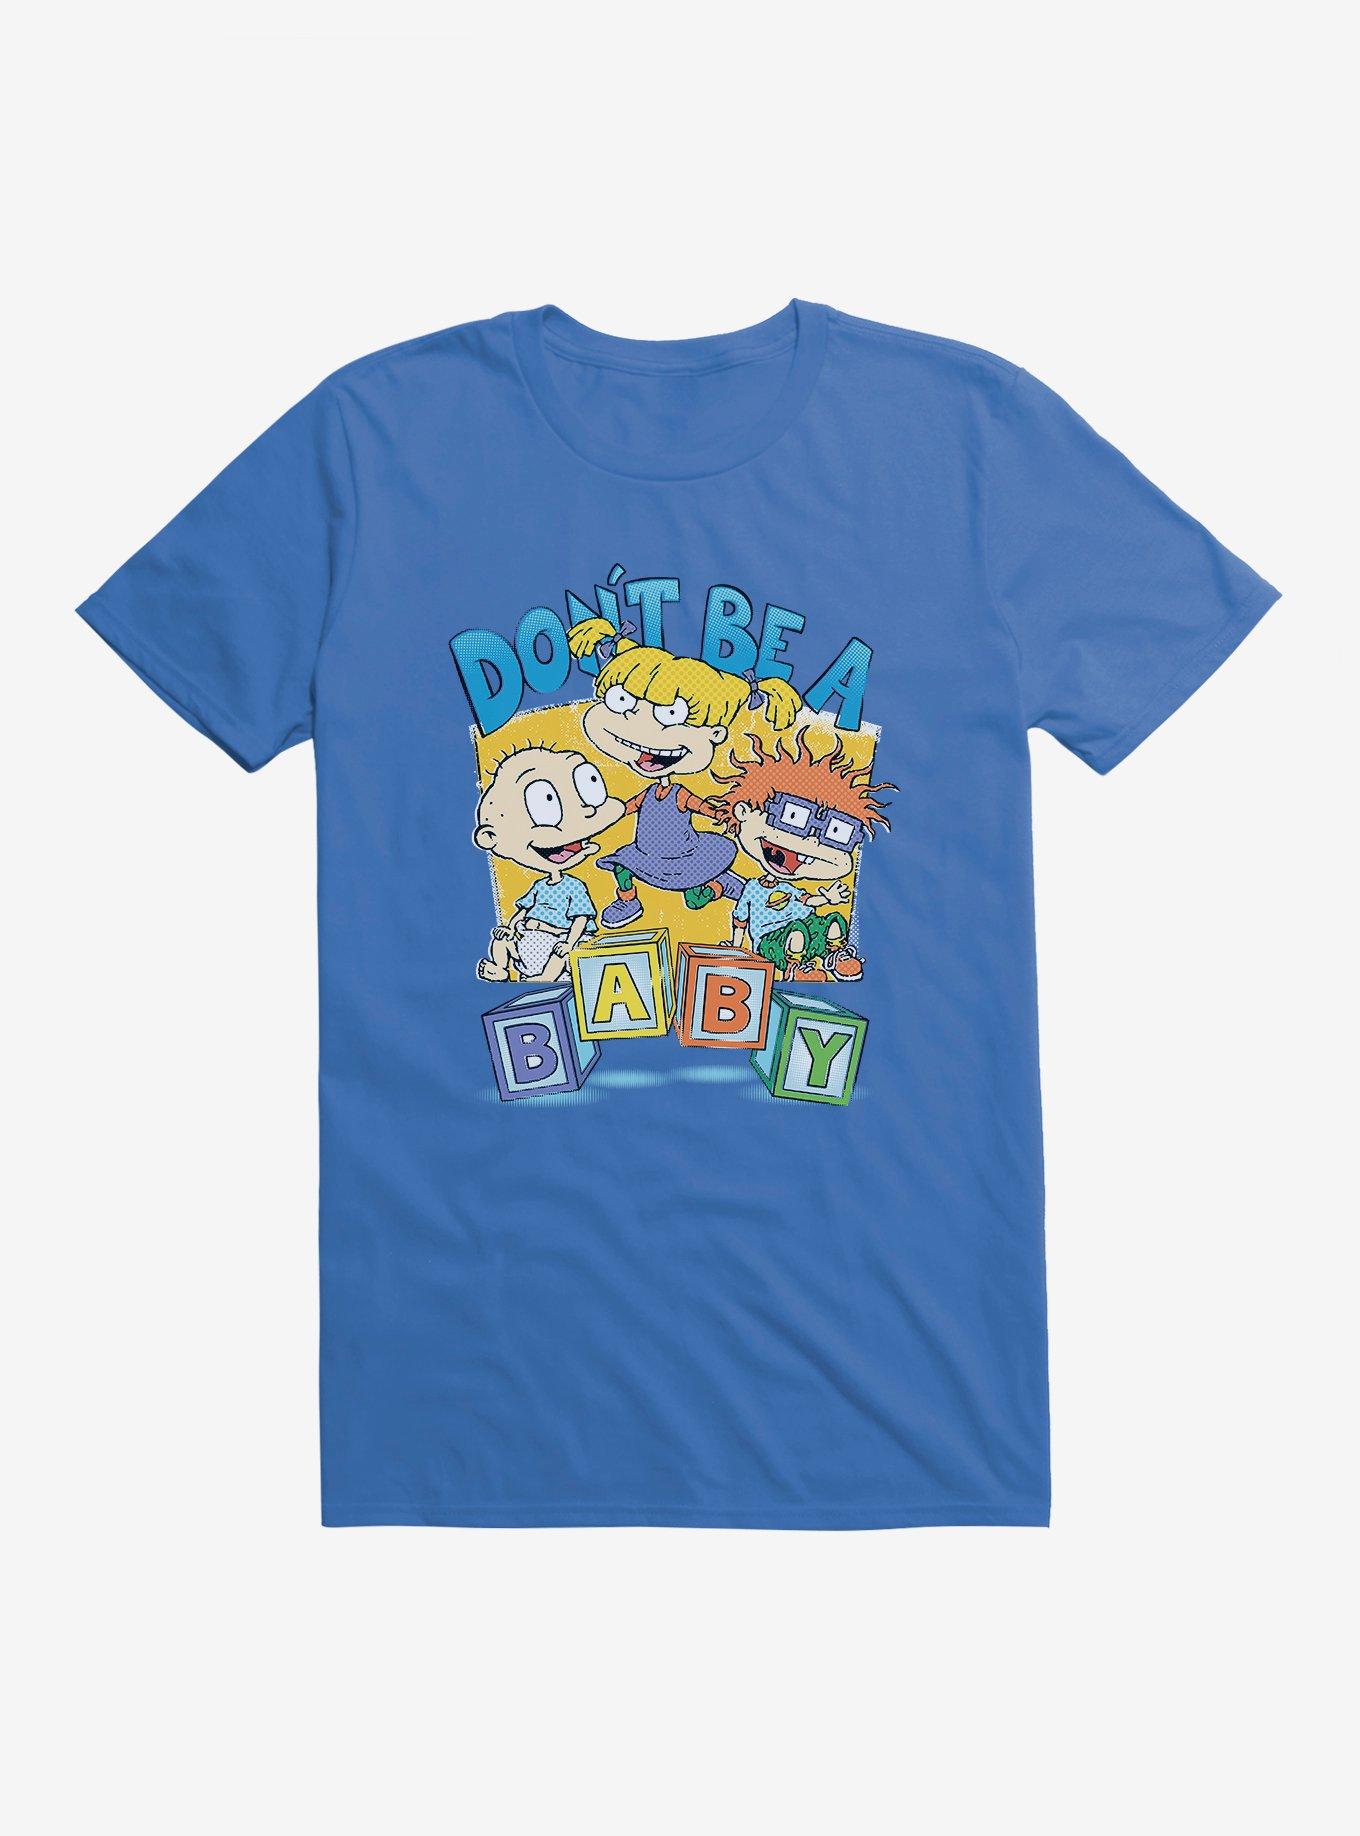 Rugrats Don't Be A Baby T-Shirt, ROYAL BLUE, hi-res